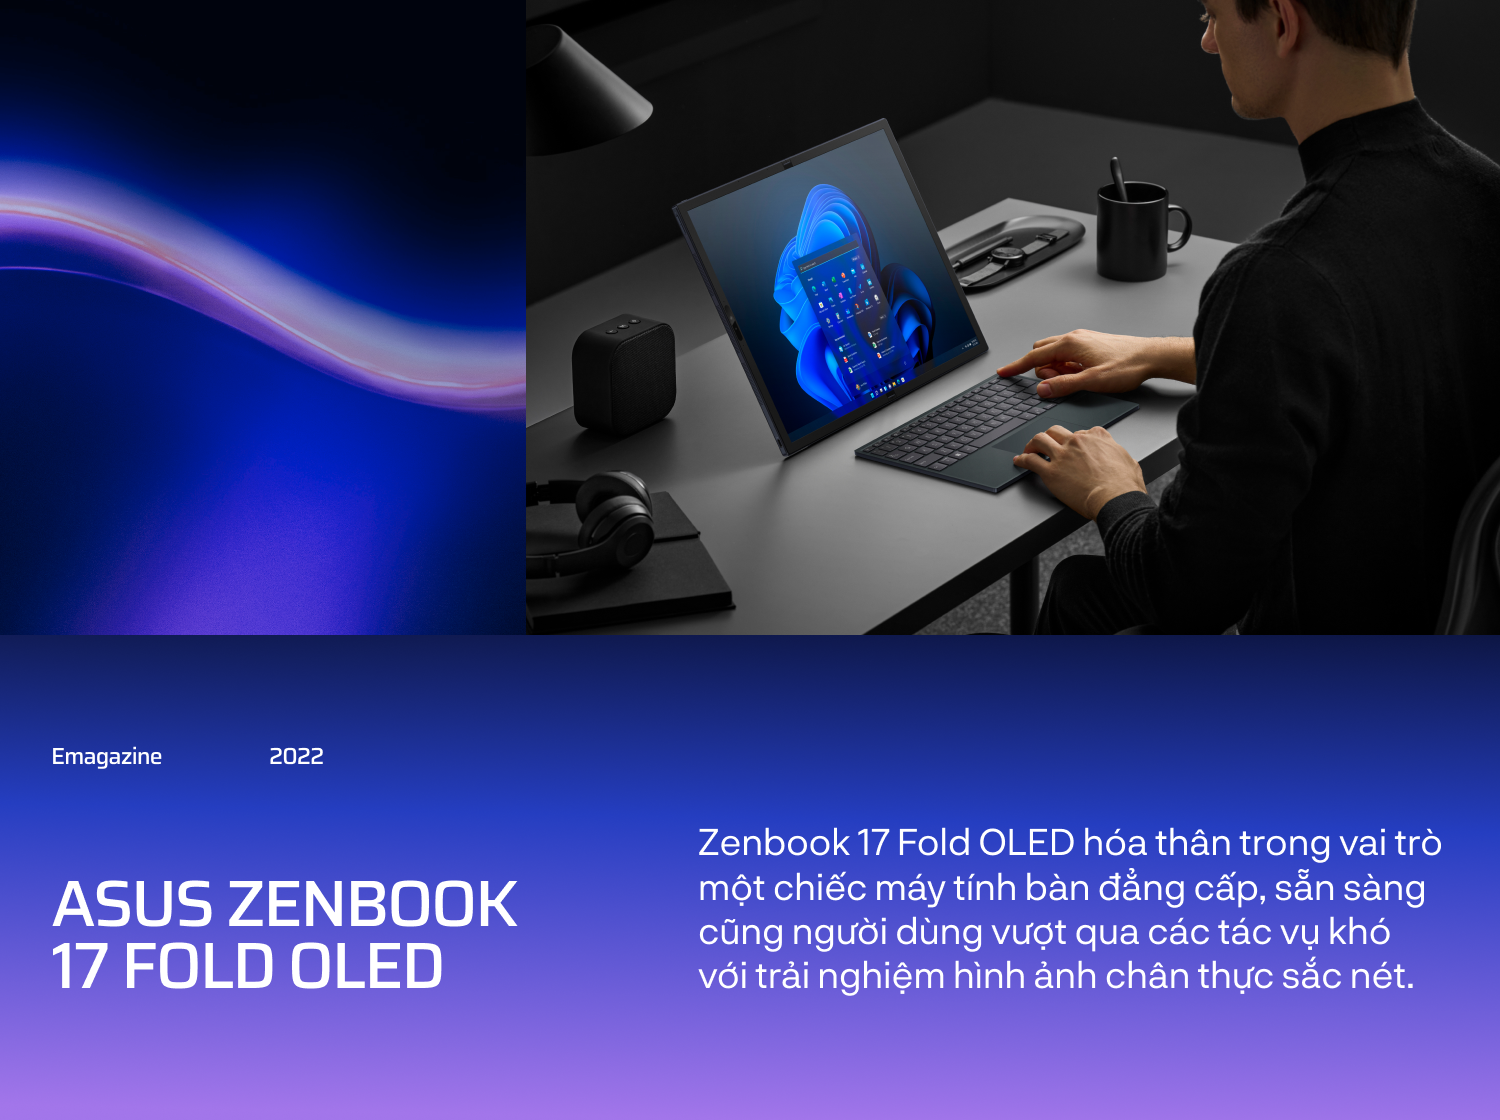 Gập ngàn giới hạn, mở vạn tương lai cùng máy tính xách tay màn hình gập ASUS Zenbook 17 Fold OLED - Ảnh 9.